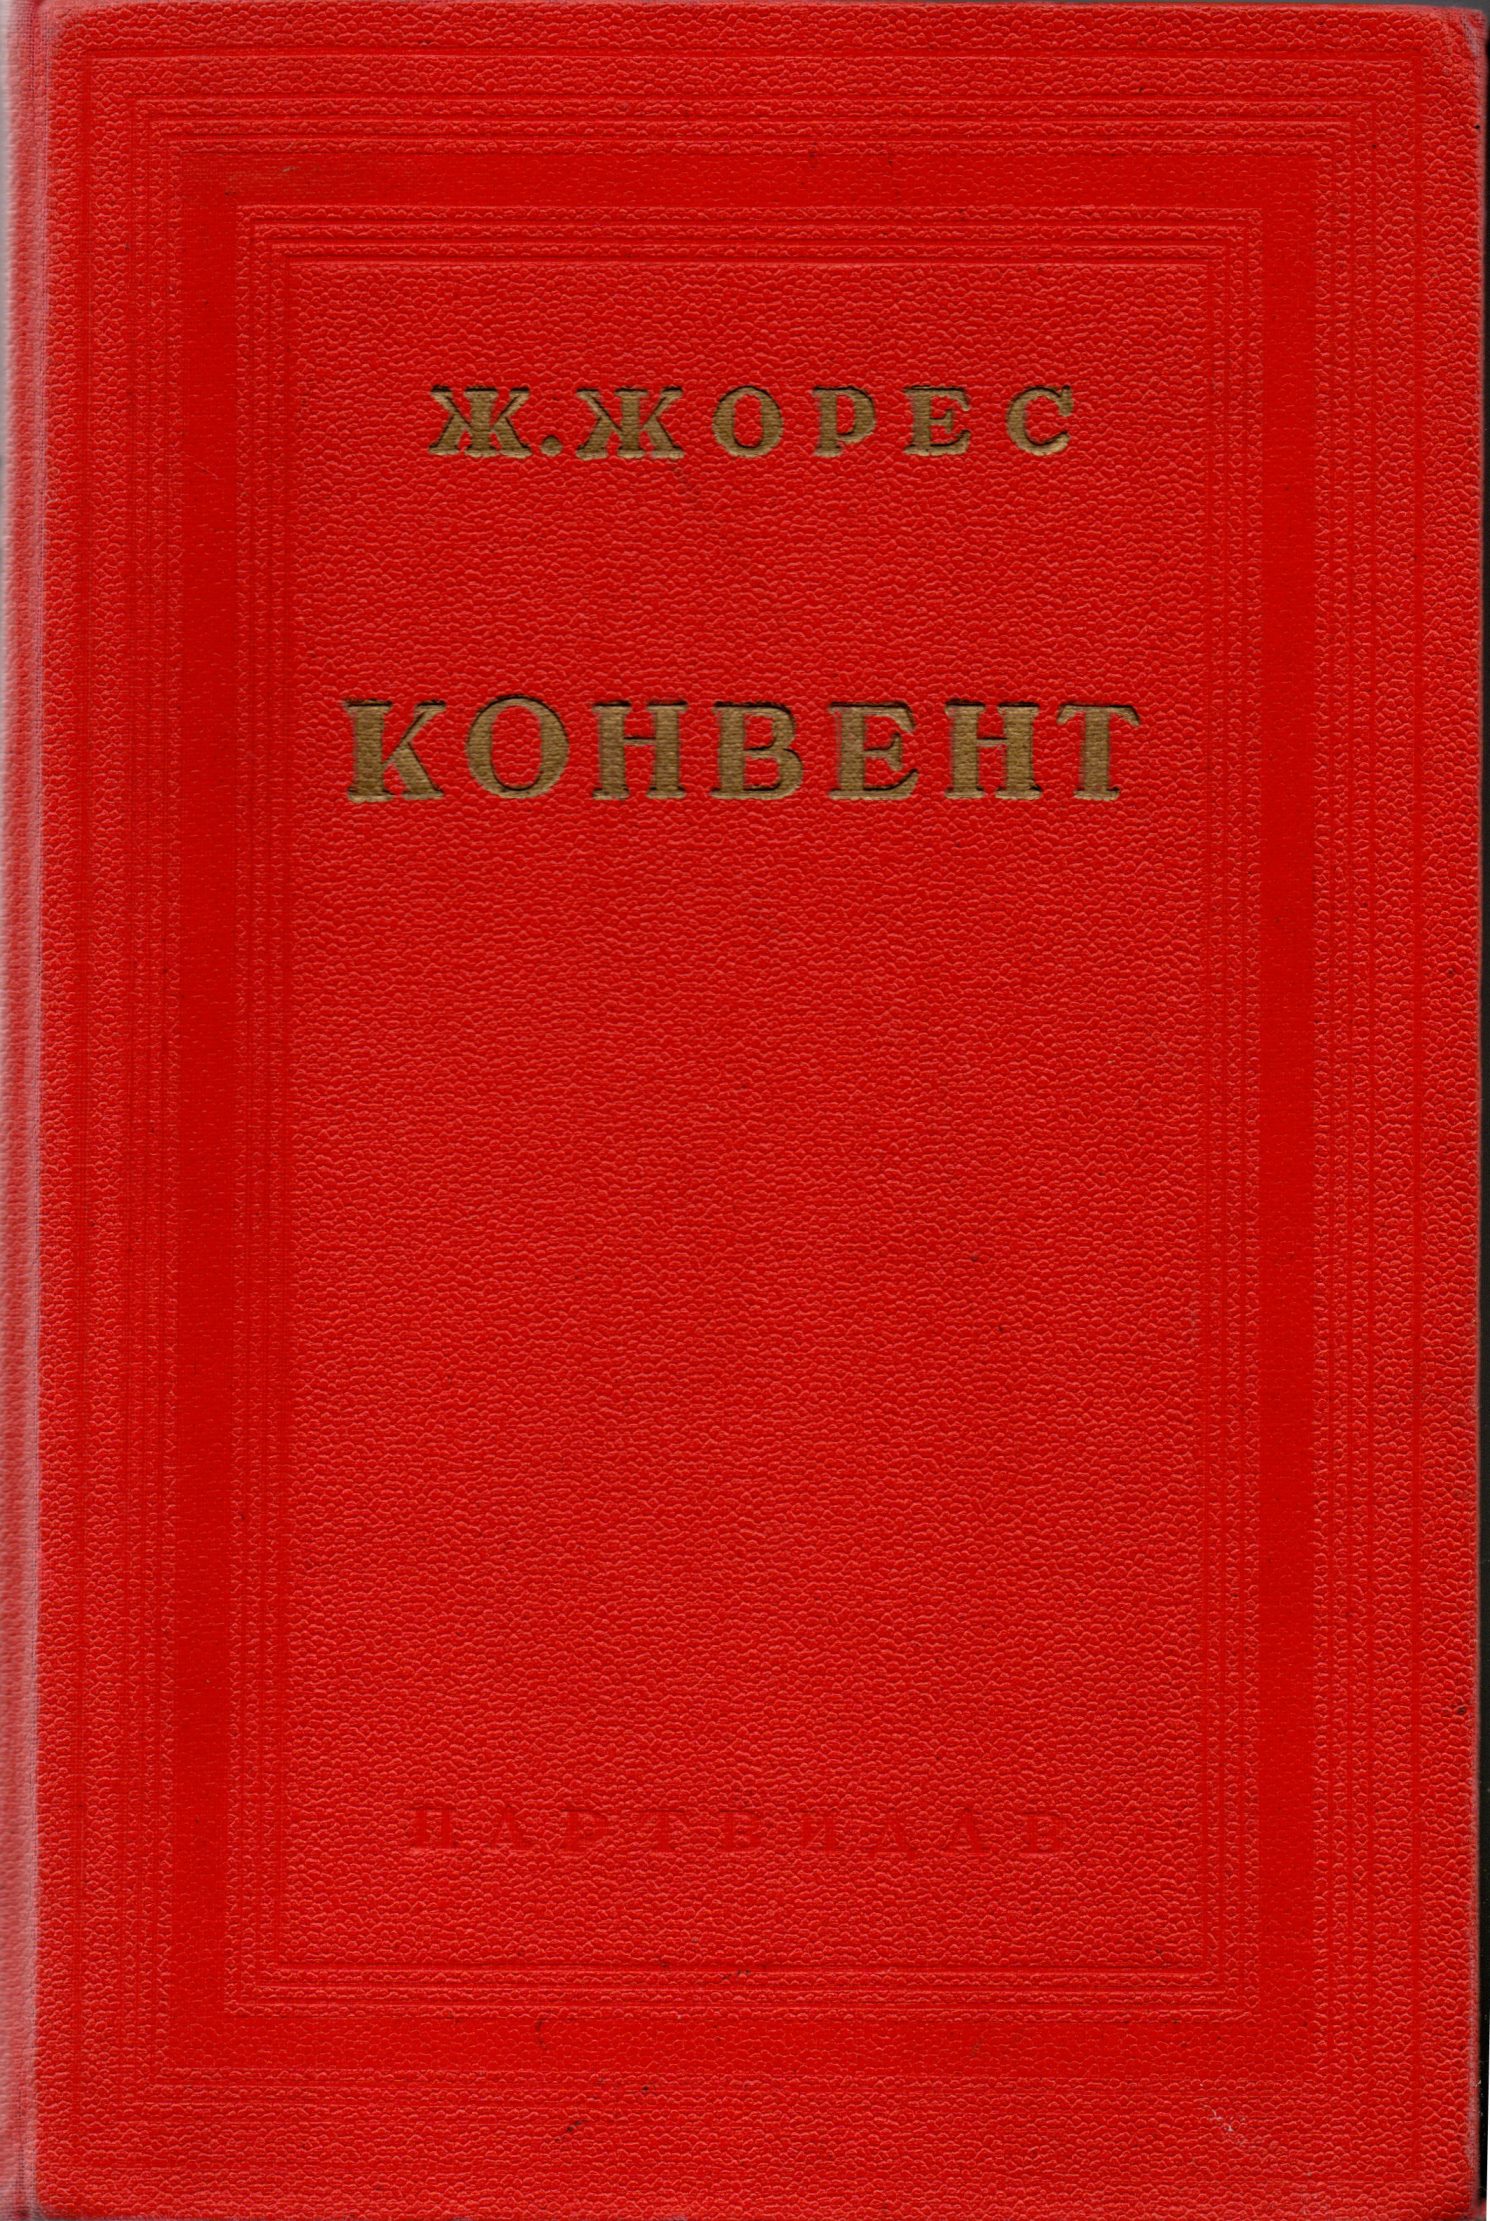 Книга "Жорес Ж. "Соціялістична історія (1789-1900). Т. IV. Конвент"